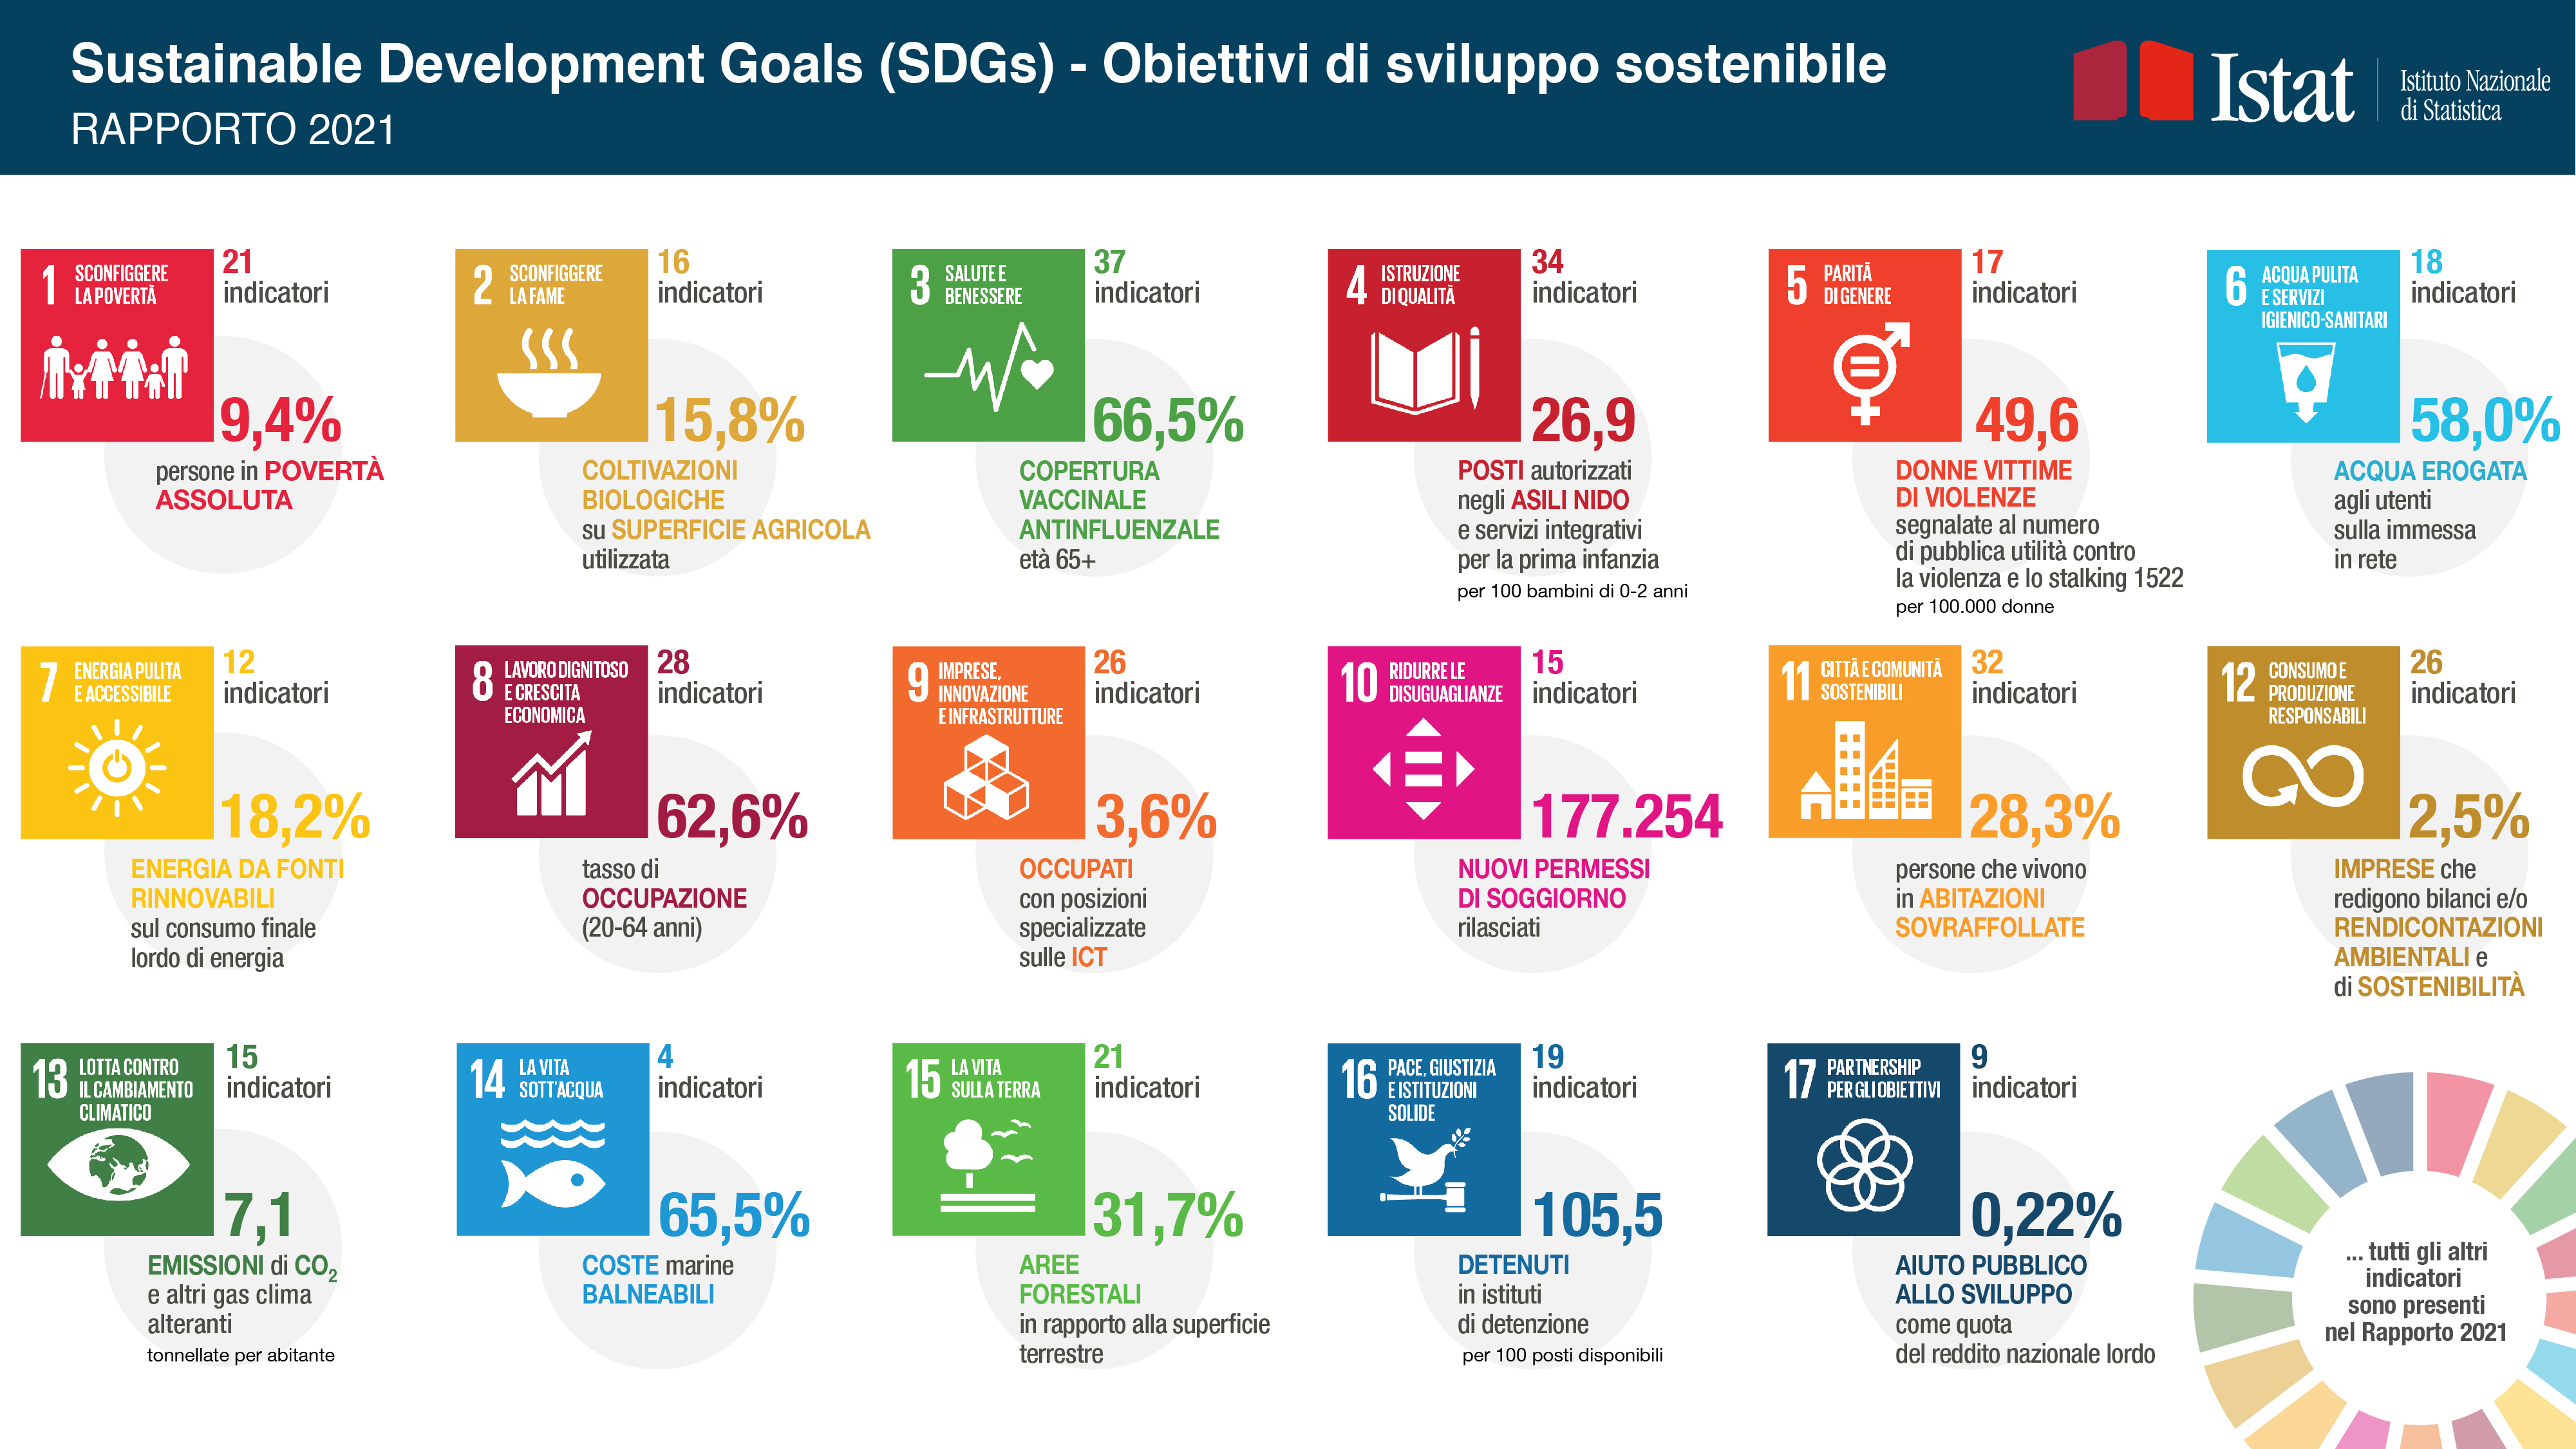 Sustainable Development Goals (SDGs) - Obiettivi di sviluppo sostenibile - Rapporto 2021